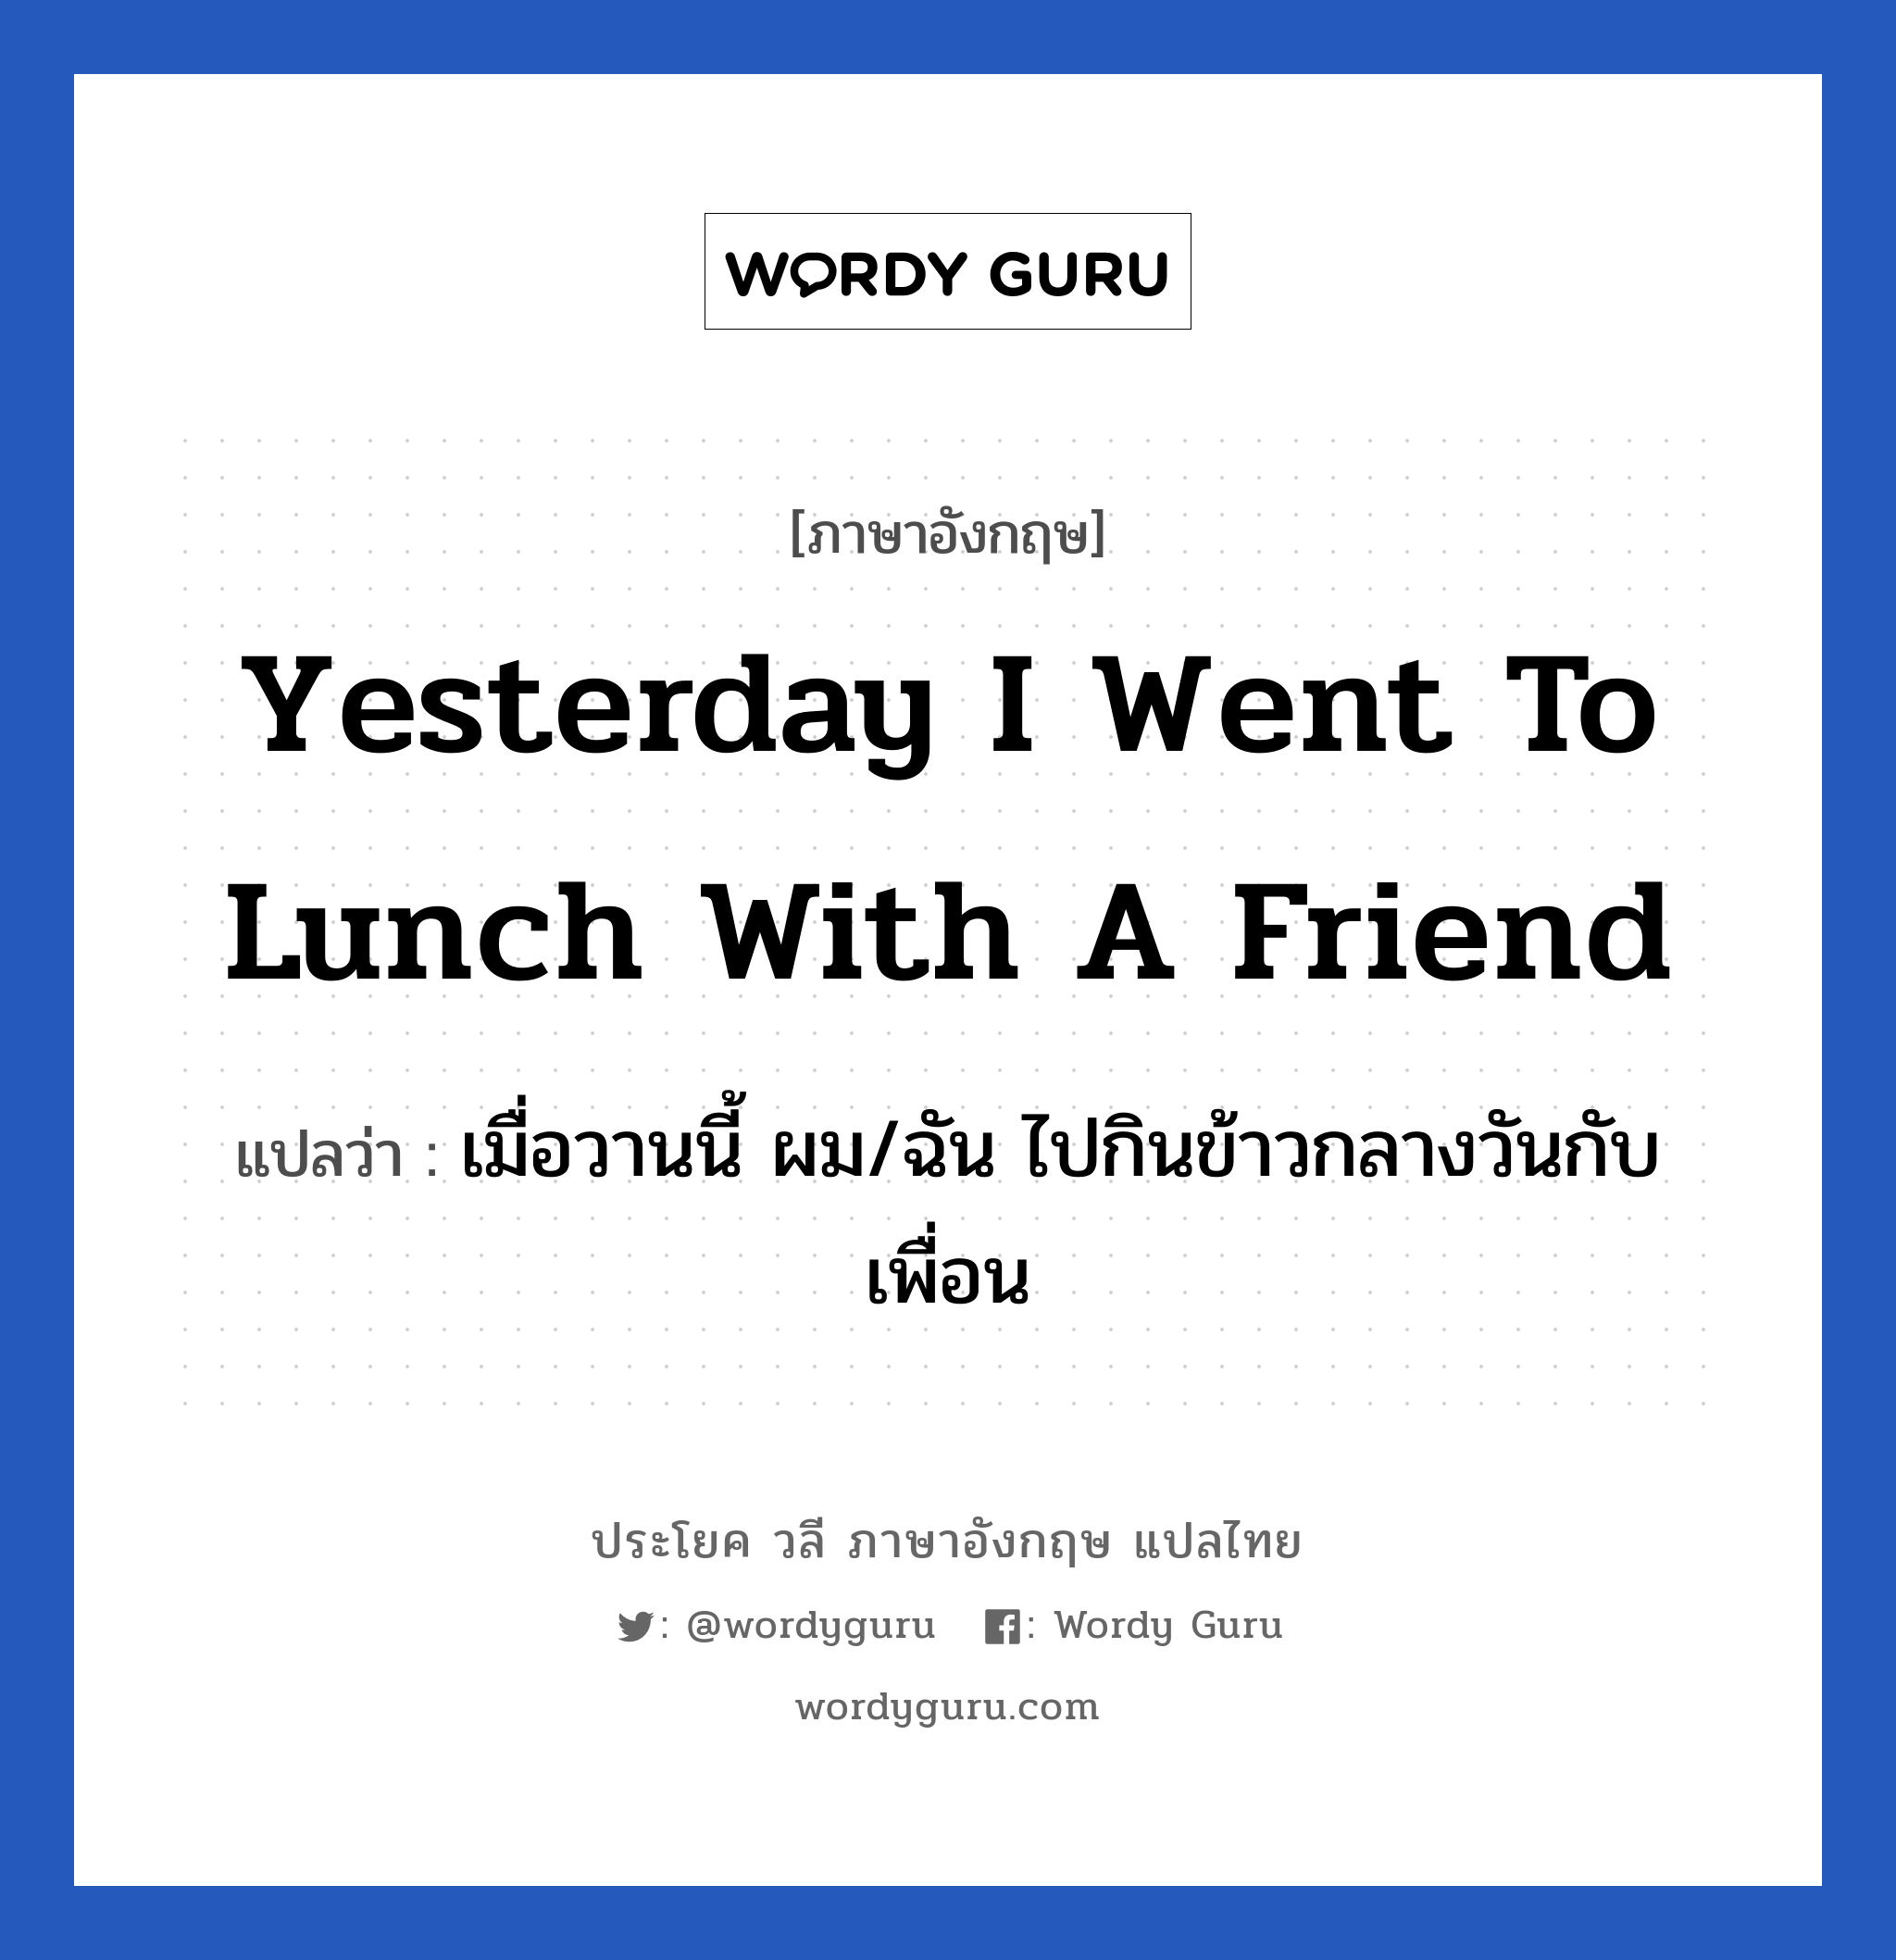 Yesterday I went to lunch with a friend แปลว่า?, วลีภาษาอังกฤษ Yesterday I went to lunch with a friend แปลว่า เมื่อวานนี้ ผม/ฉัน ไปกินข้าวกลางวันกับเพื่อน